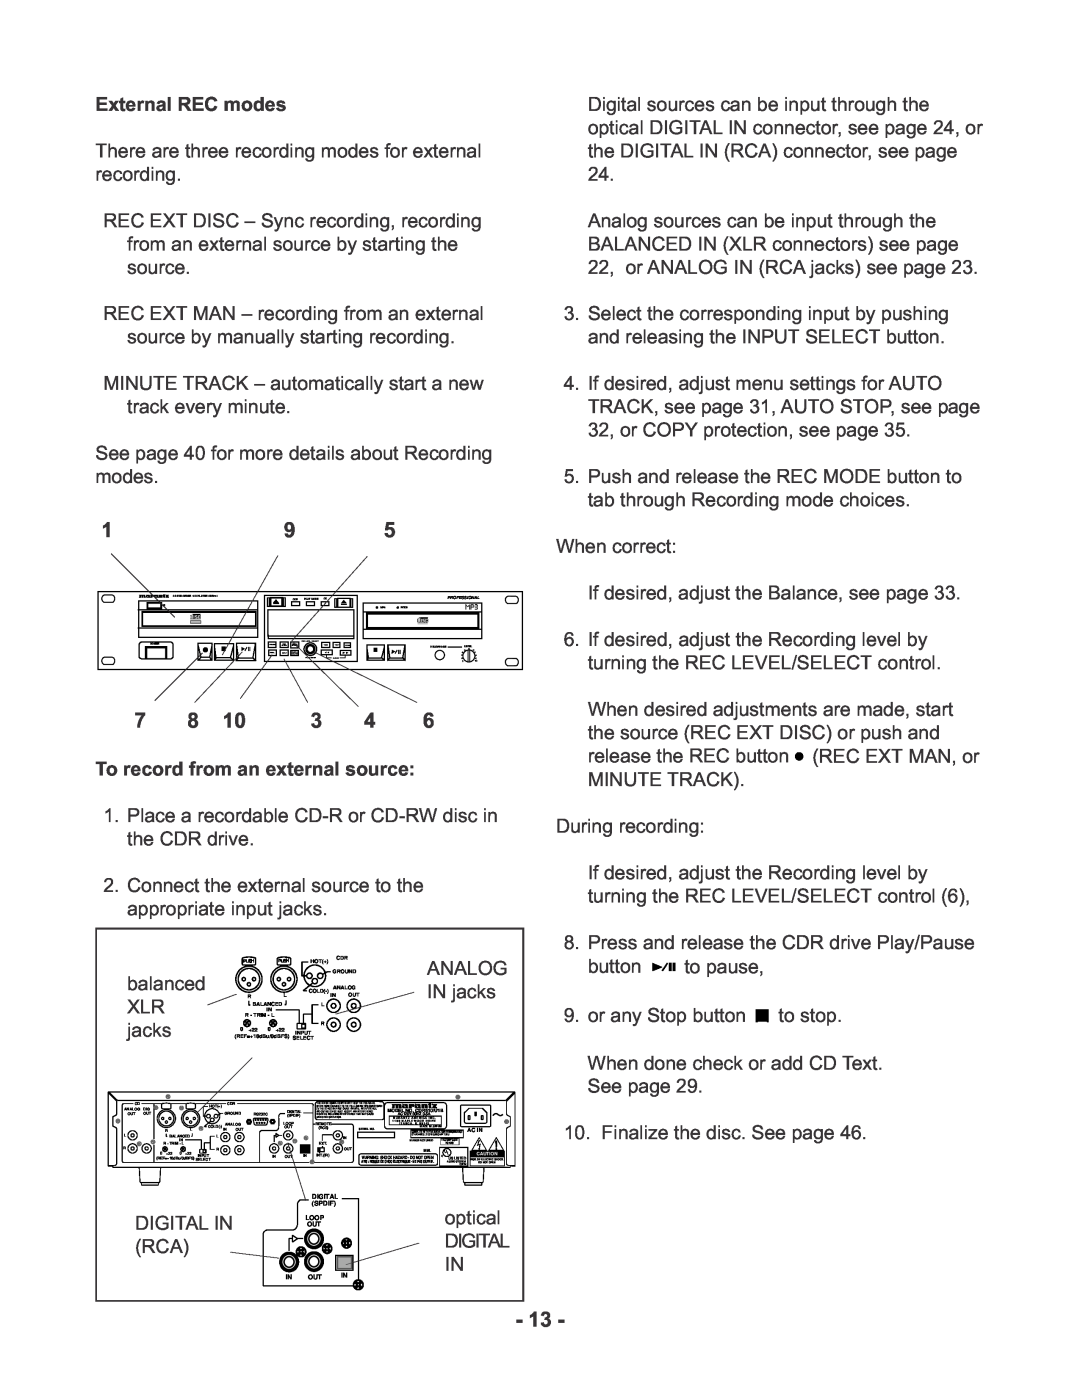 Marantz CDR510 manual External REC modes 